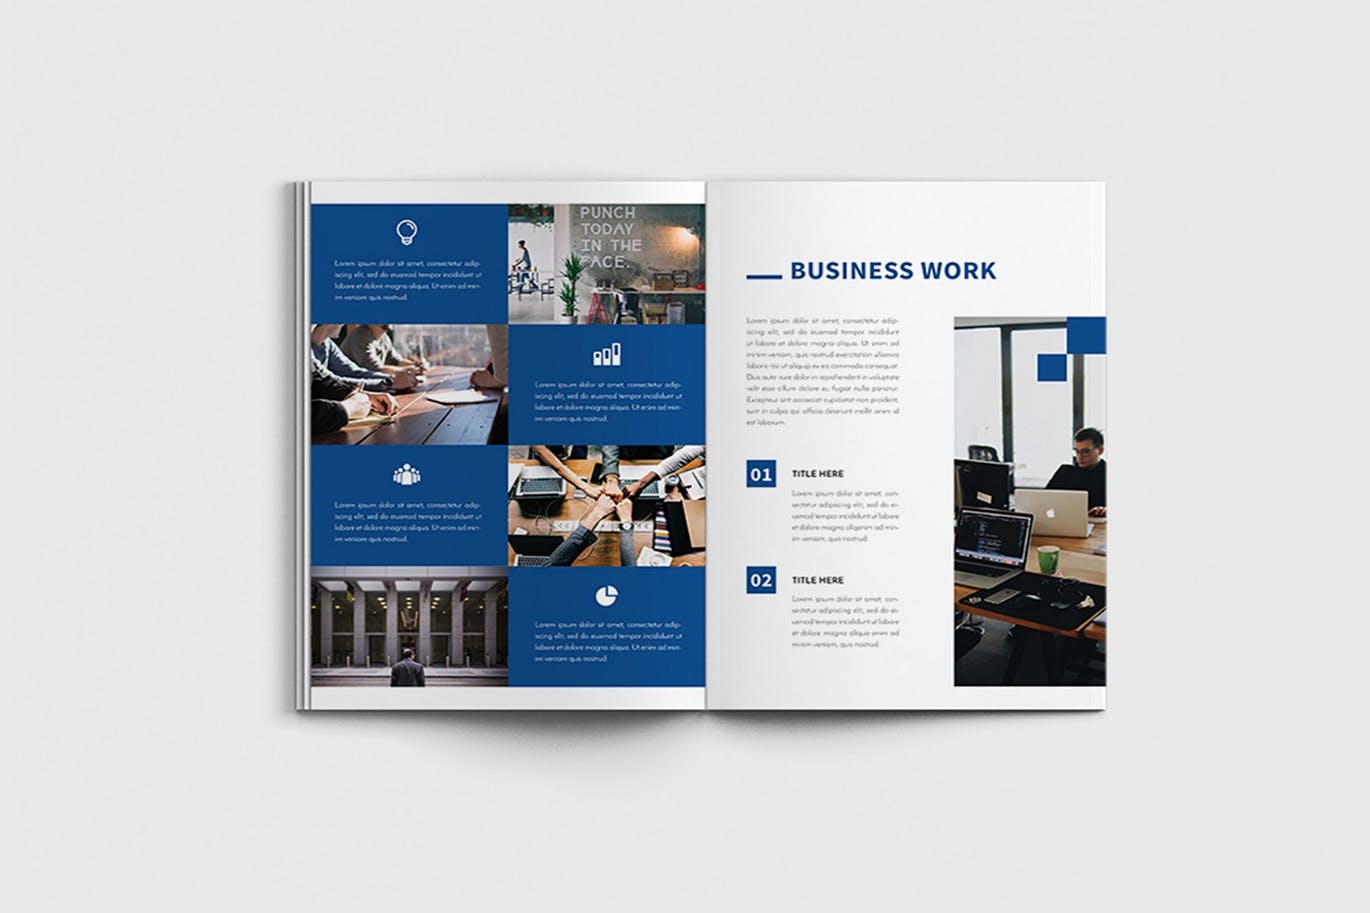 商业计划书/企业简介宣传画册设计模板 Walkers – A4 Business Brochure Template插图(5)